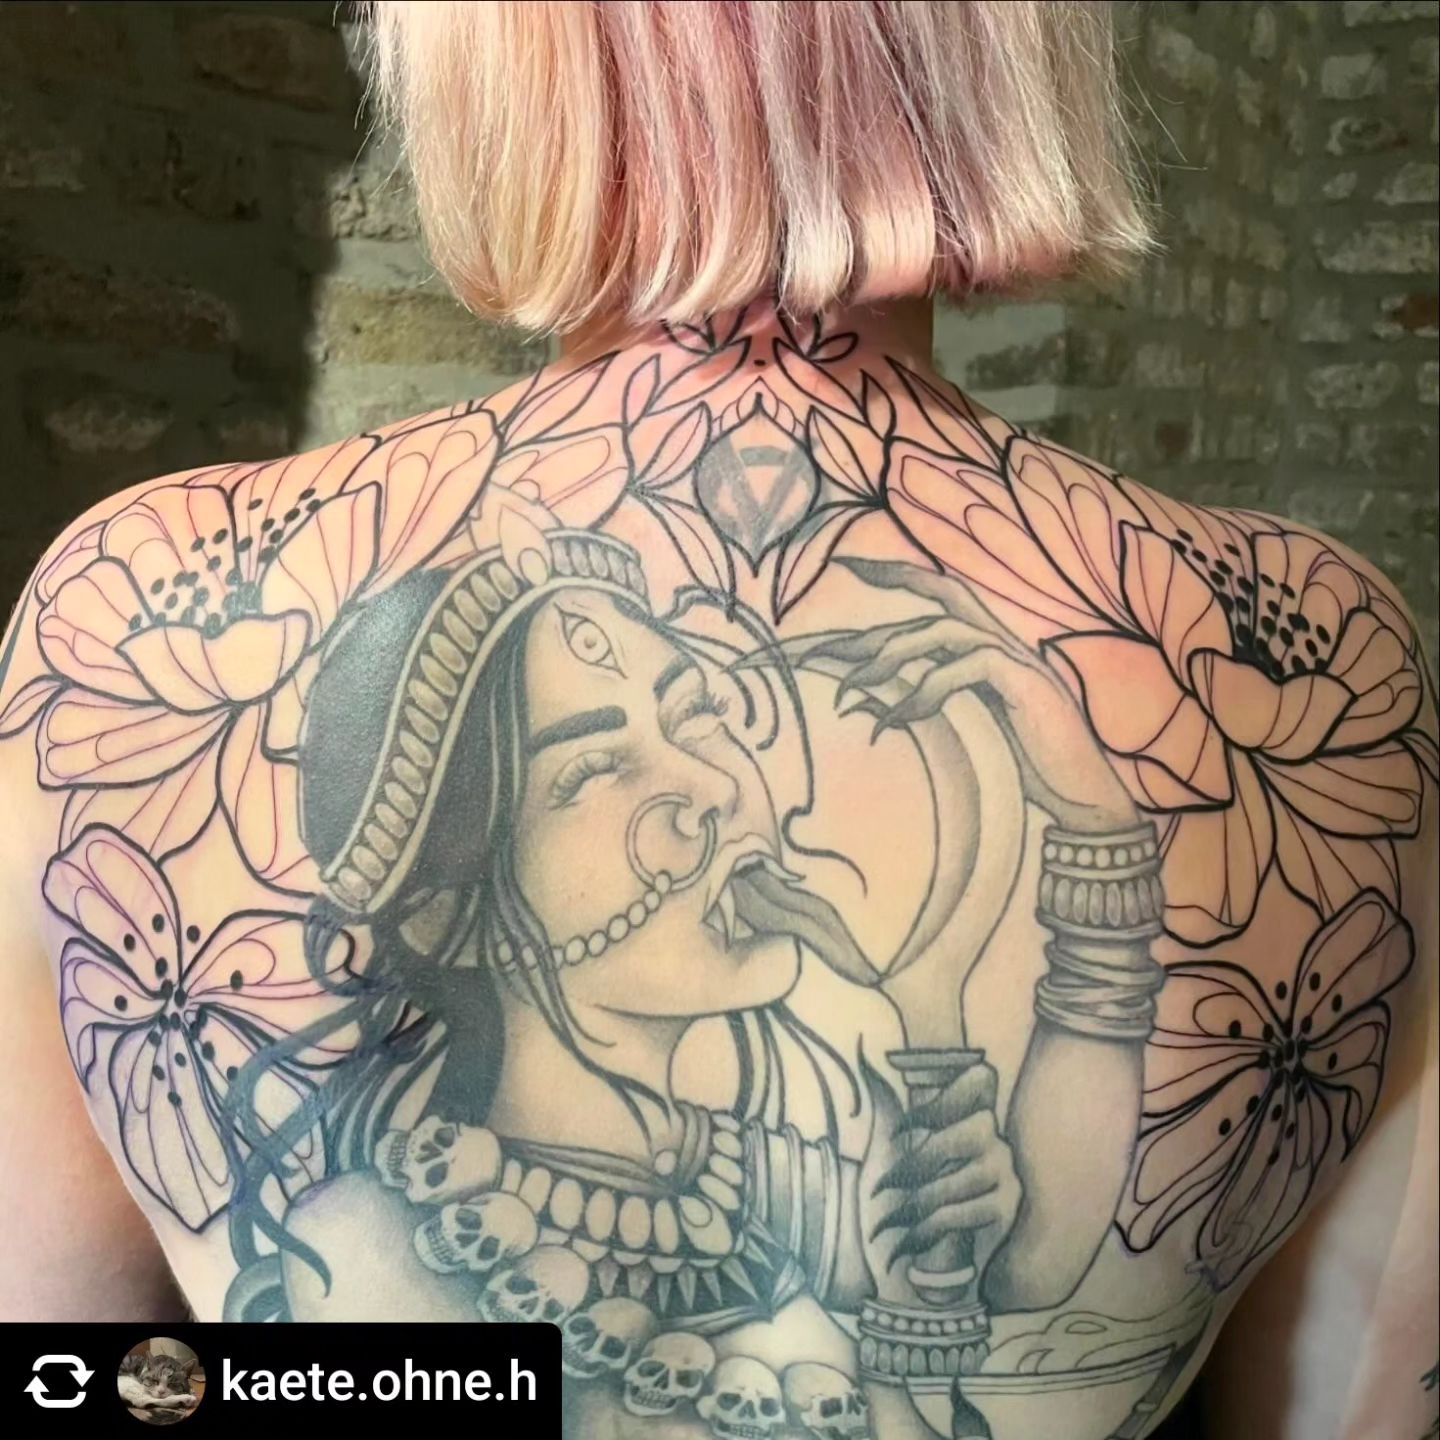 Backpiece von @kaete.ohne.h 

Blumen 
•
#inked #inkedgirls #ink #tattoos #tattoo